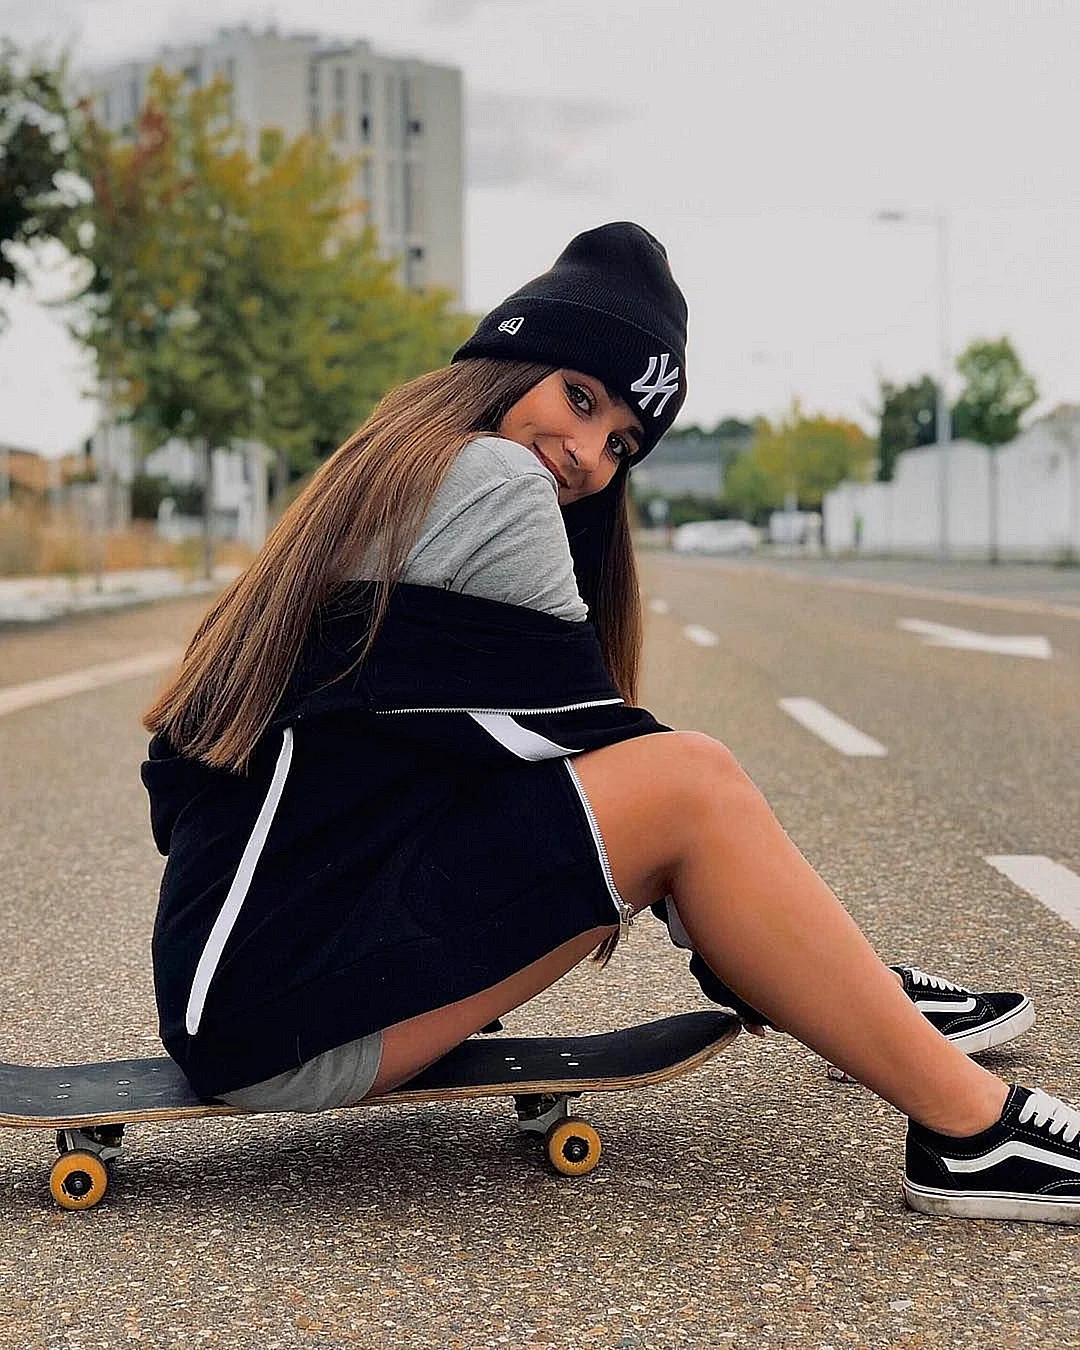 Девушка на скейтборде